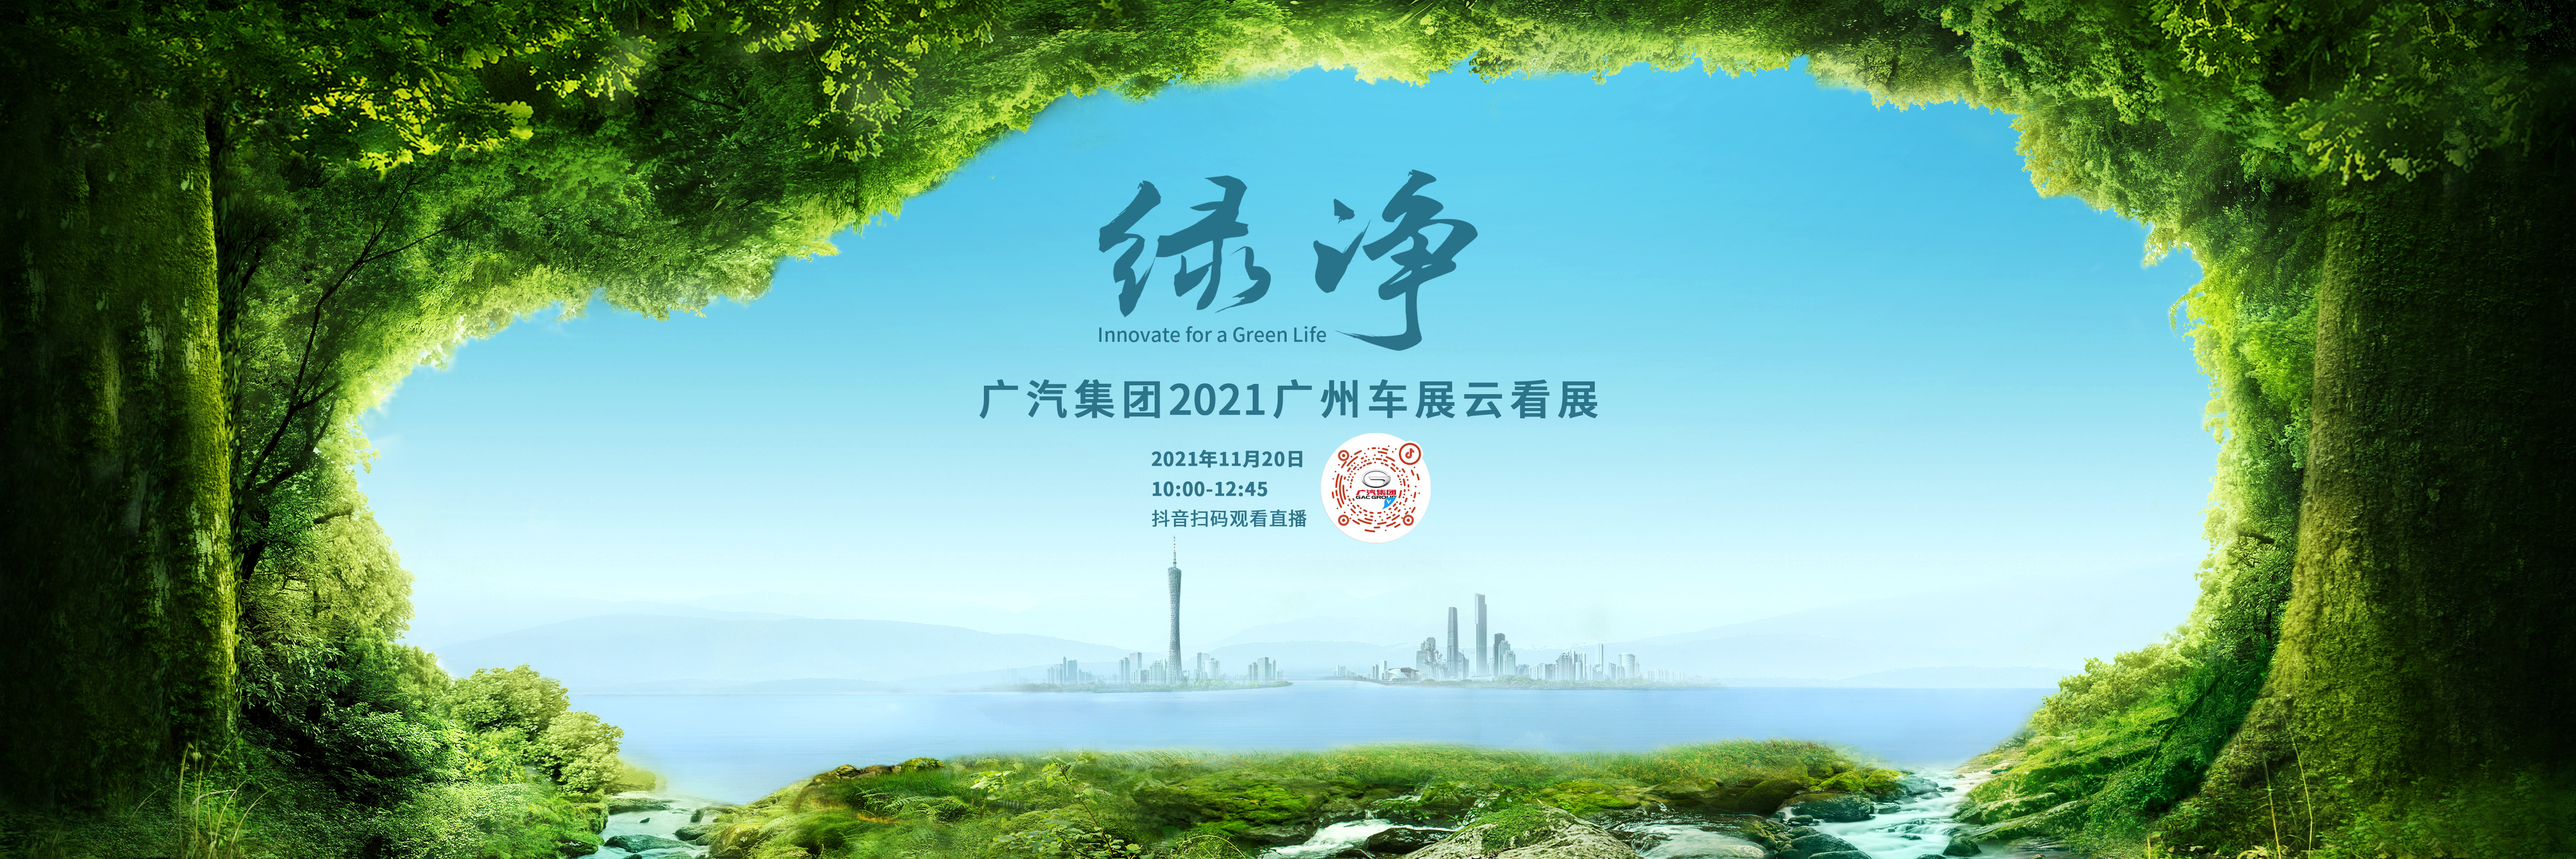 Gac Group 2021 Guangzhou Auto Show cloud exhibition